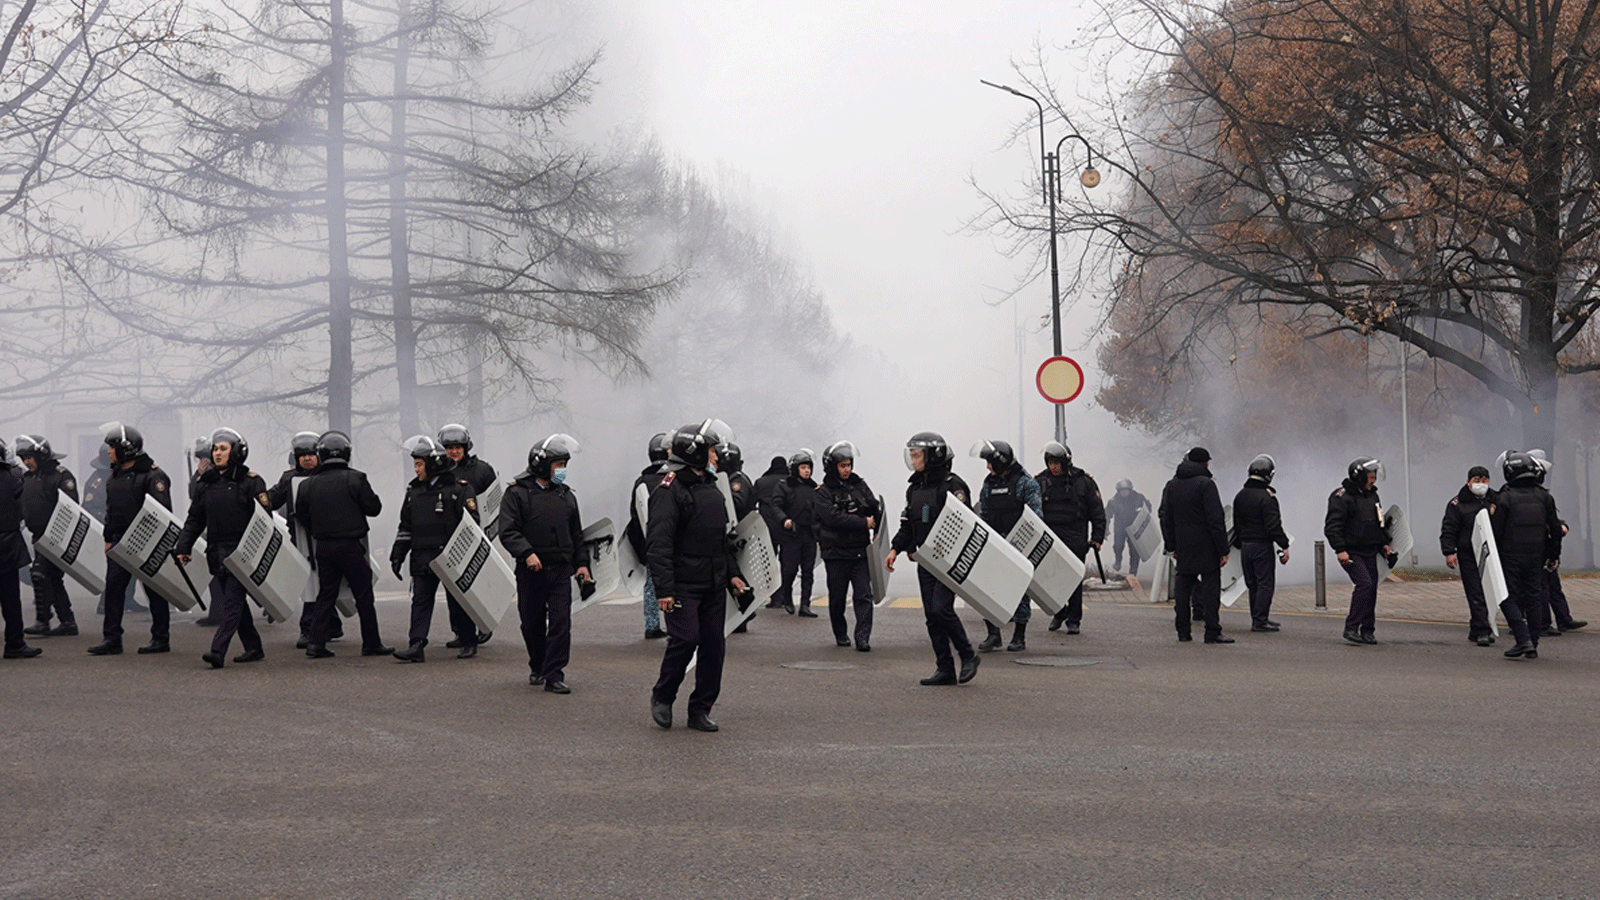 ضباط شرطة مكافحة الشغب يقومون بدوريات في أحد الشوارع حيث خرجت احتجاجات غير مسبوقة على ارتفاع أسعار الطاقة عن السيطرة في ألماتي في 5 كانون الثاني/يناير 2022.